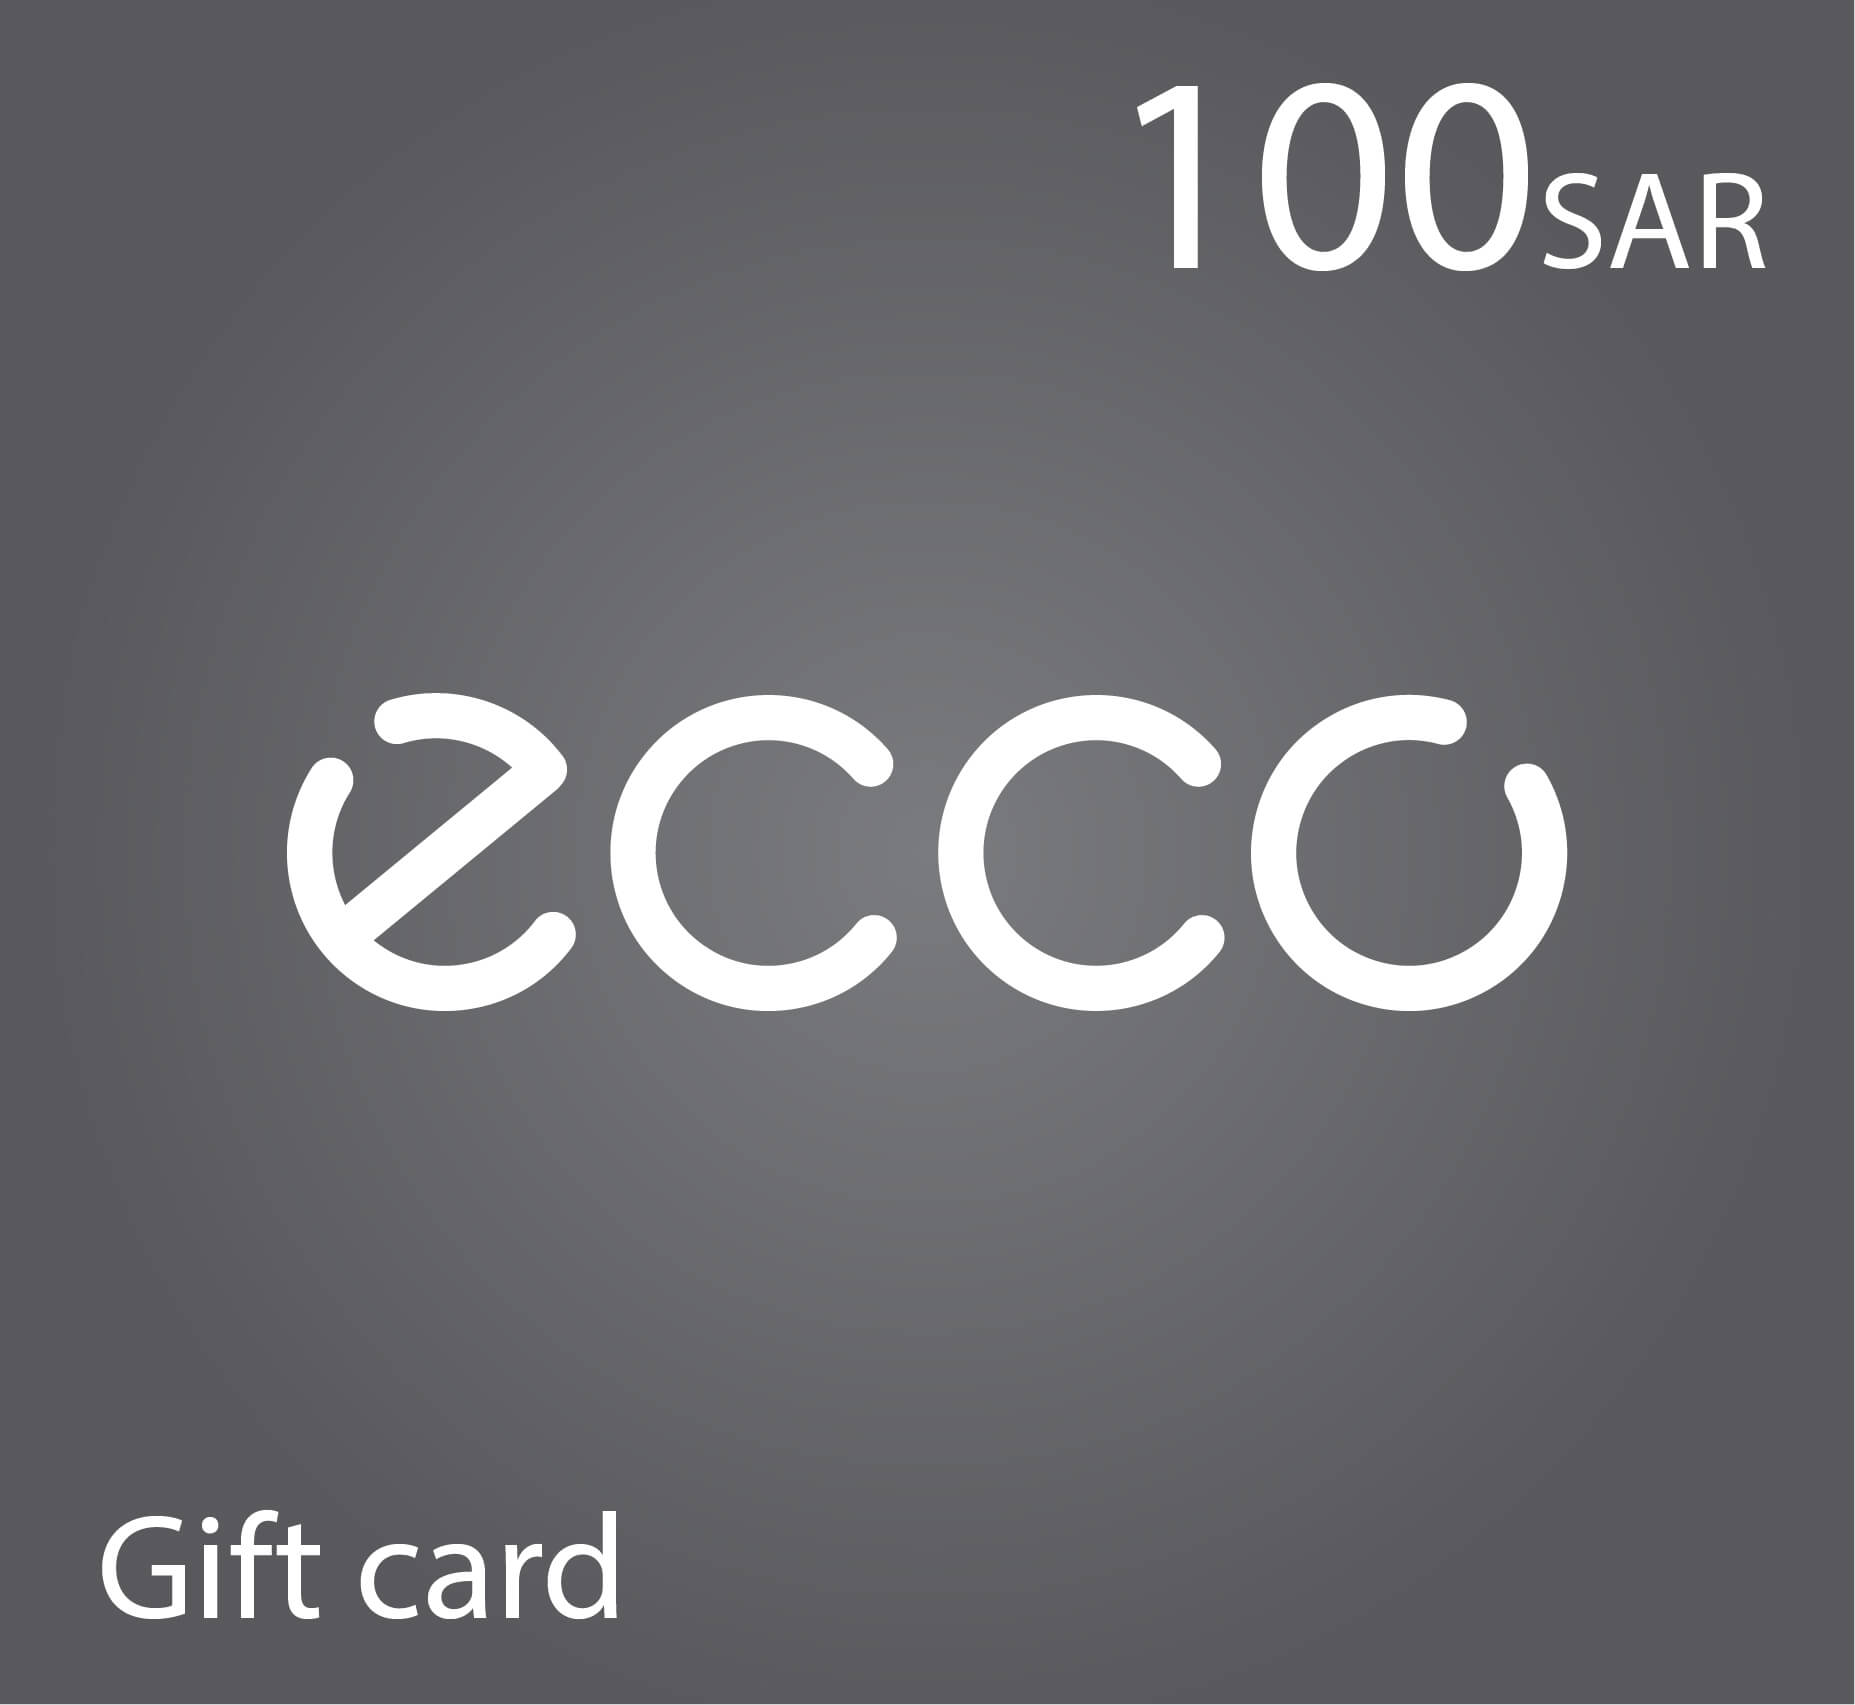 Ecco Gift Card - 100 SAR